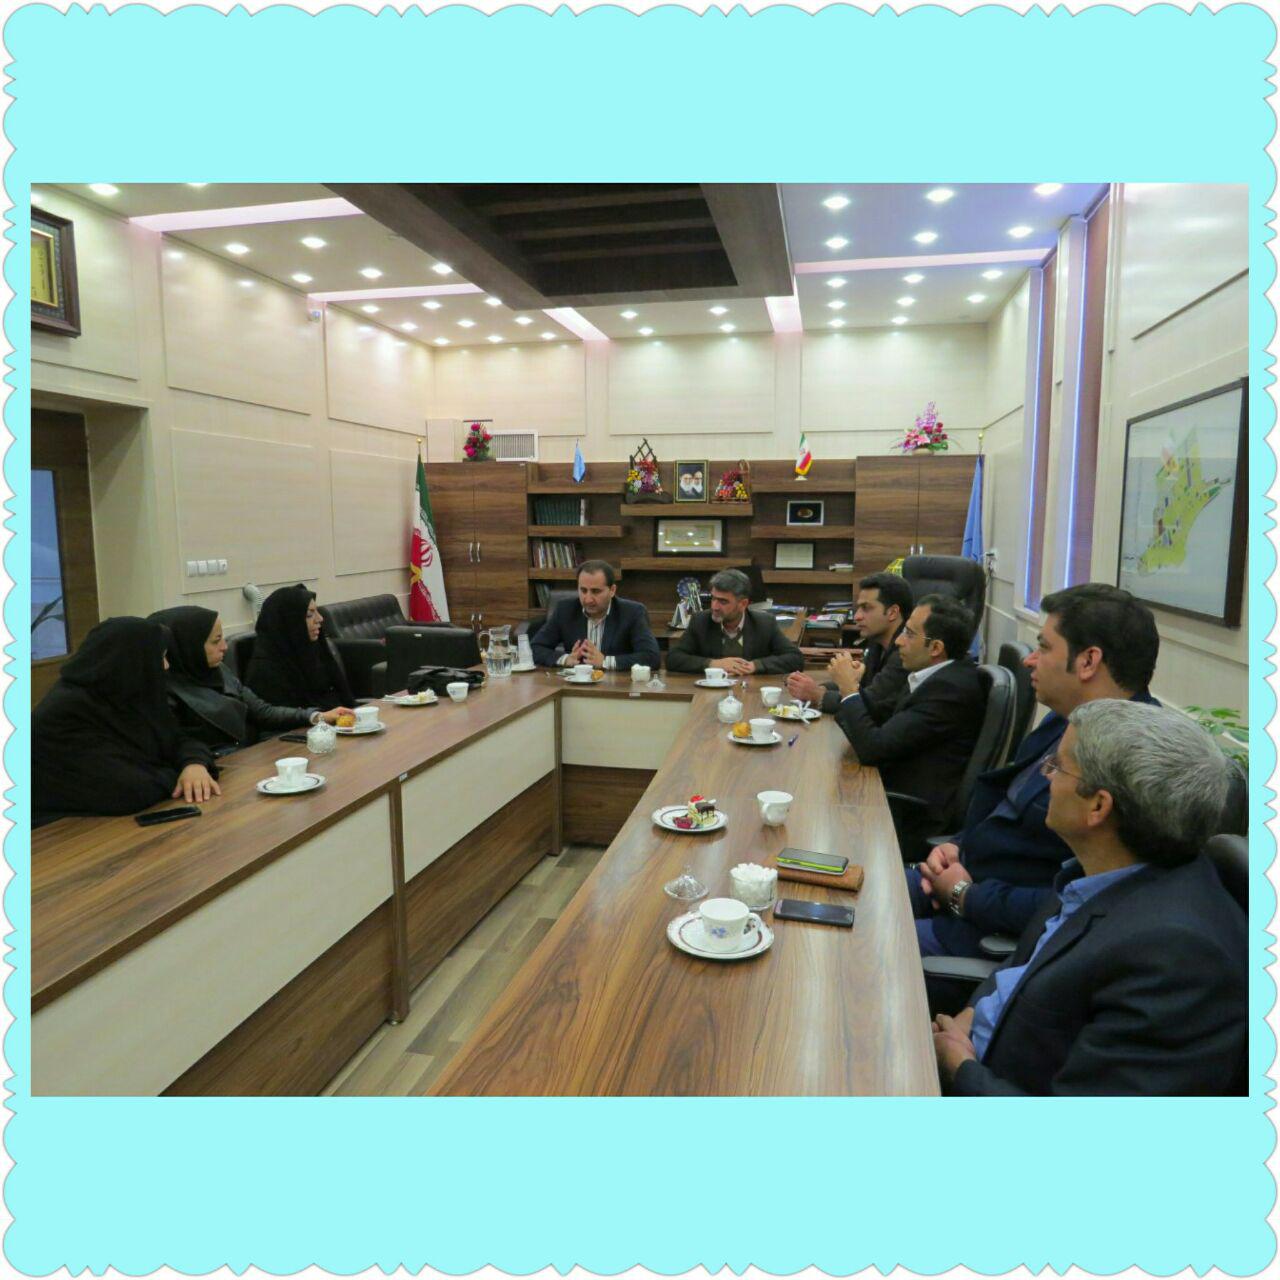 دیدار معلمان ونمایندگان اولیاء مربیان مدرسه شهید کریمی باشهردار وشورای اسلامی درشهرداری